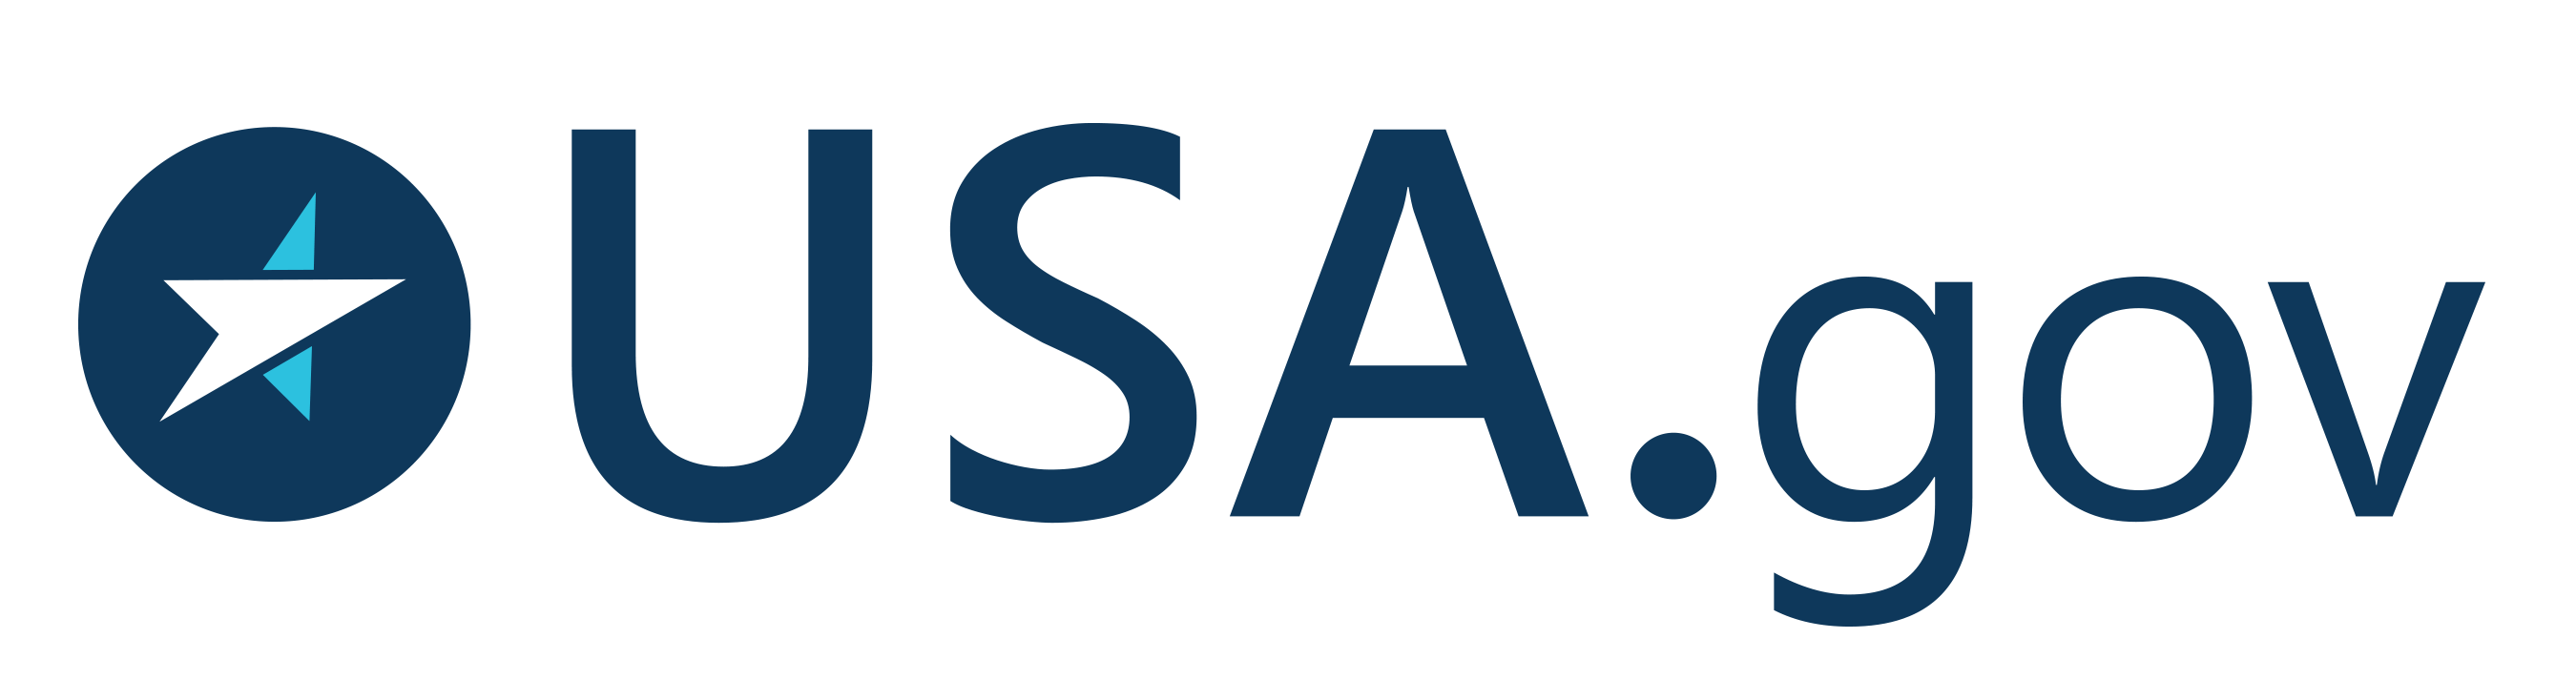 Usa.gov Logo - USA.gov logo as of 2017.png